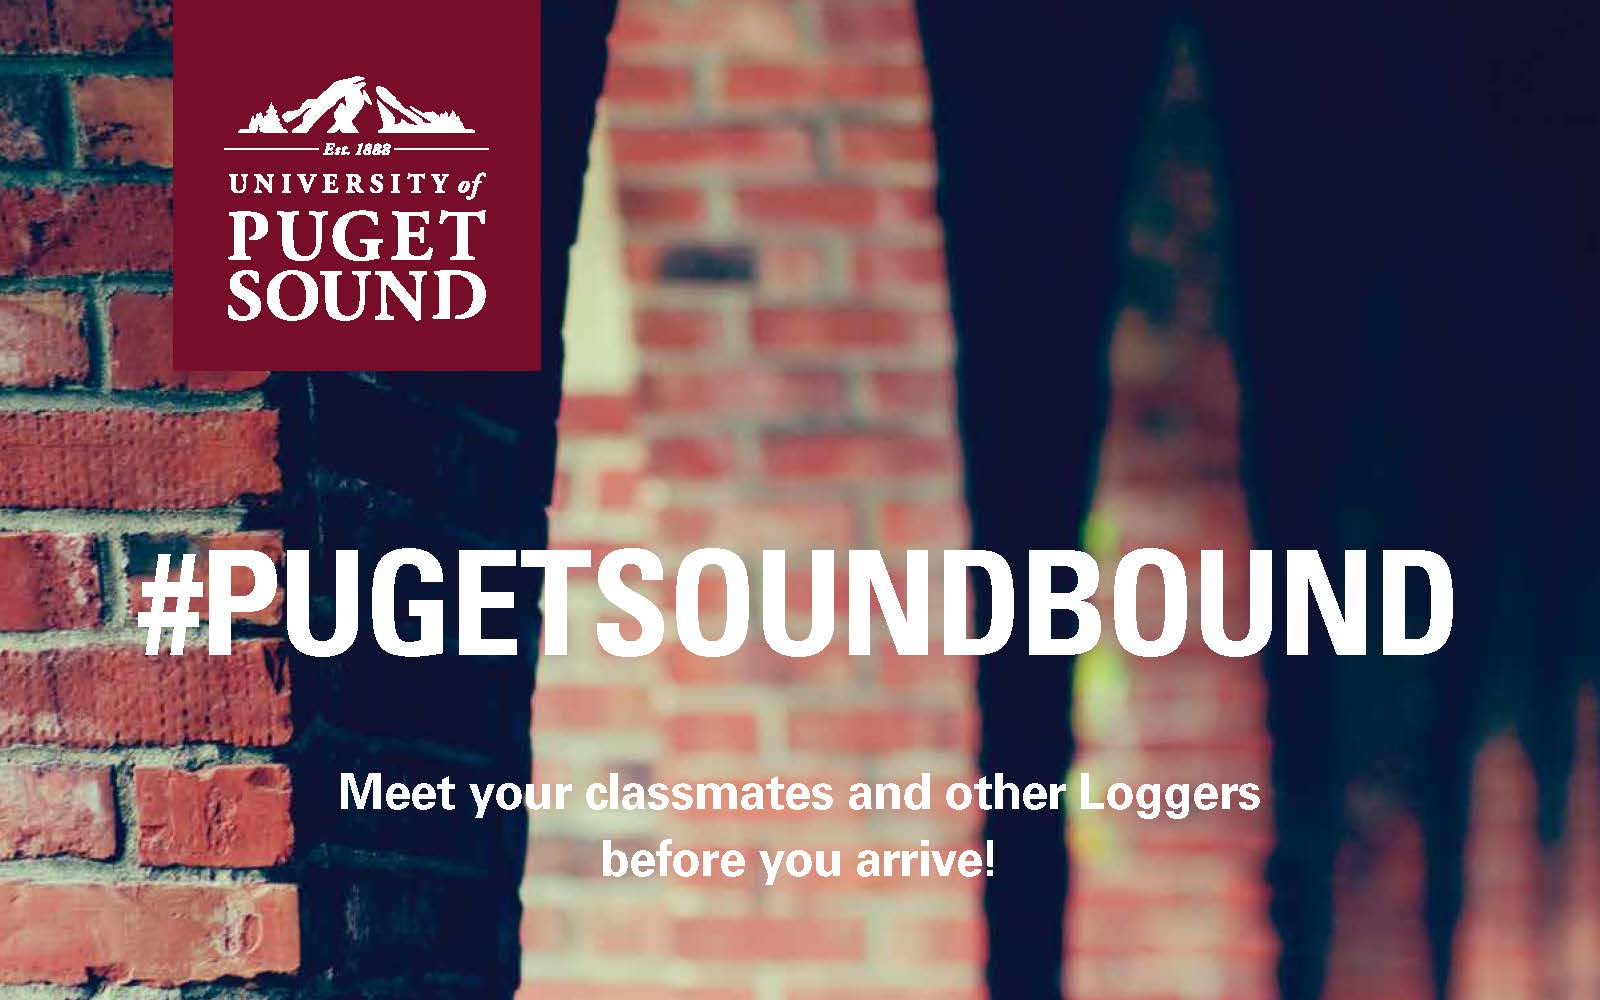 #PugetSoundBound